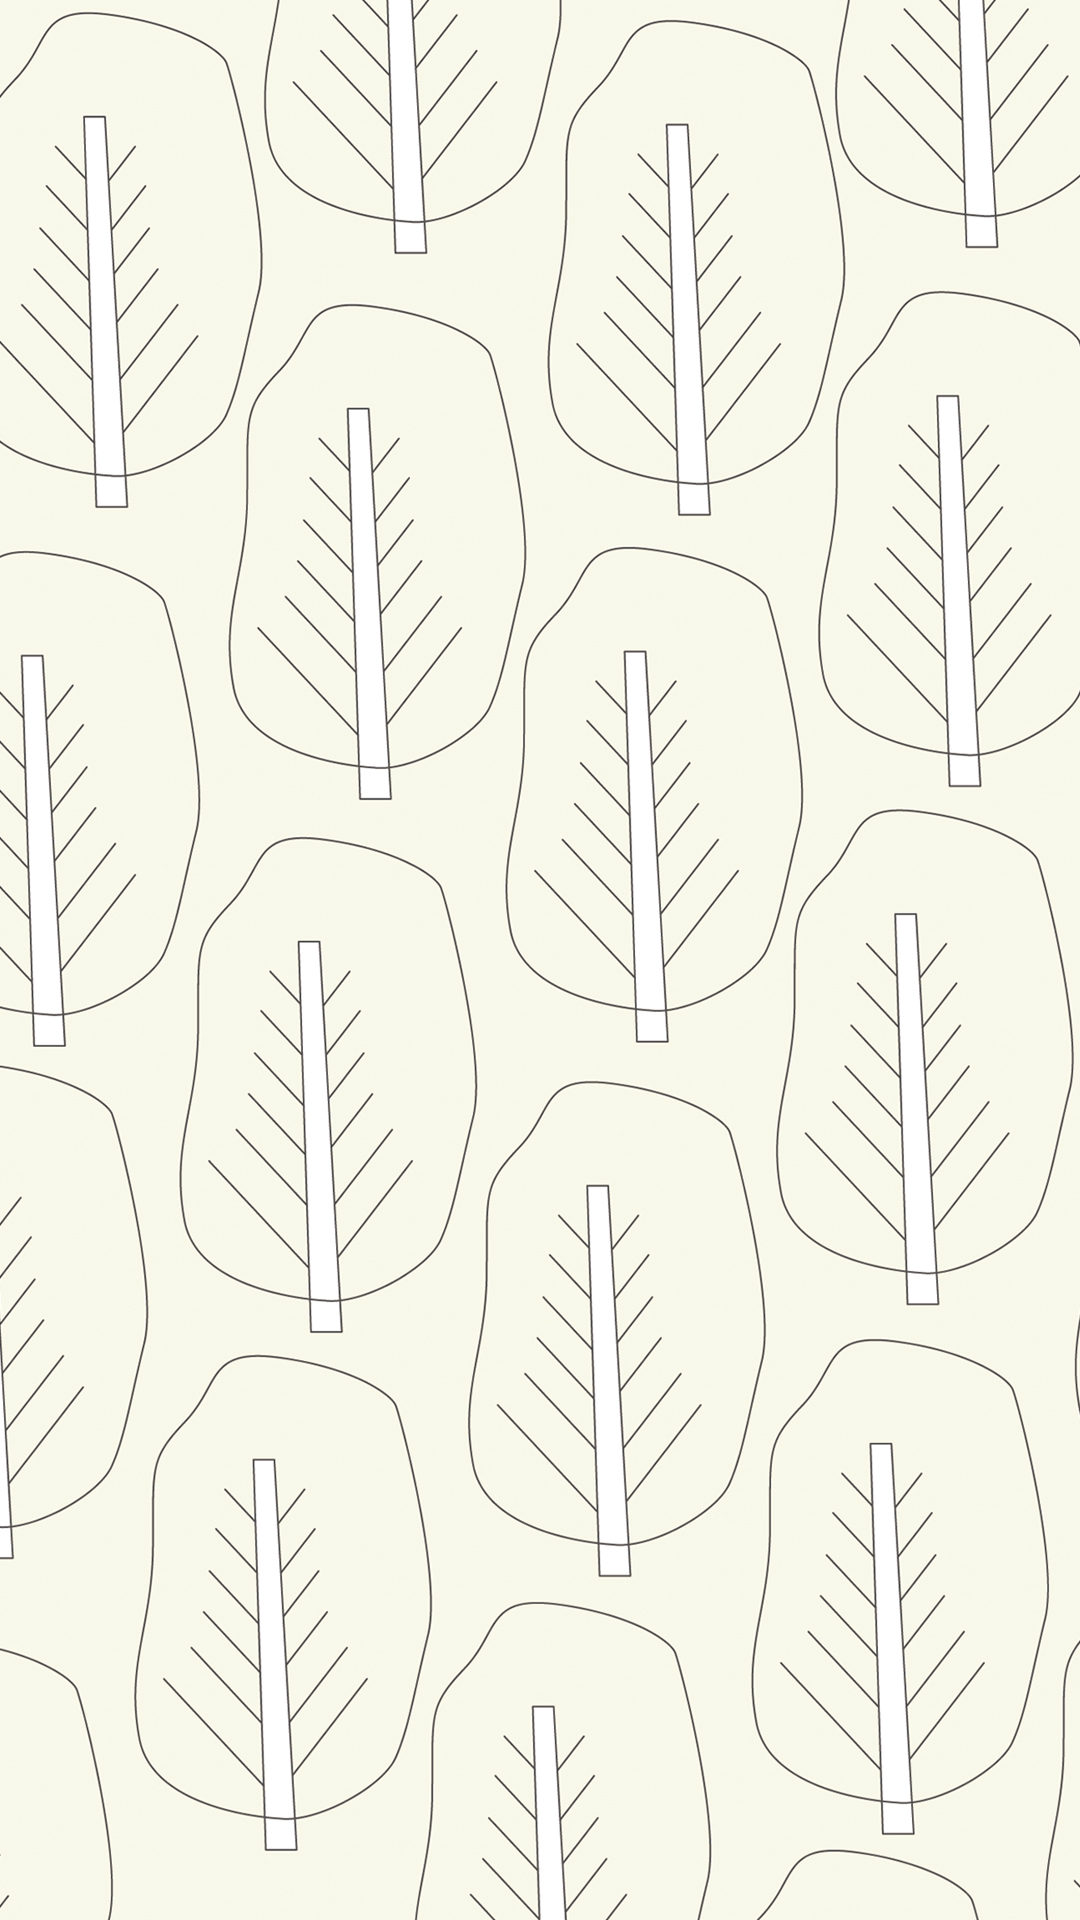 Iphone壁紙 フリーイラスト スマホ壁紙 ホーム ロック画面 無料ダウンロード 北欧 森の木々たち Sovani